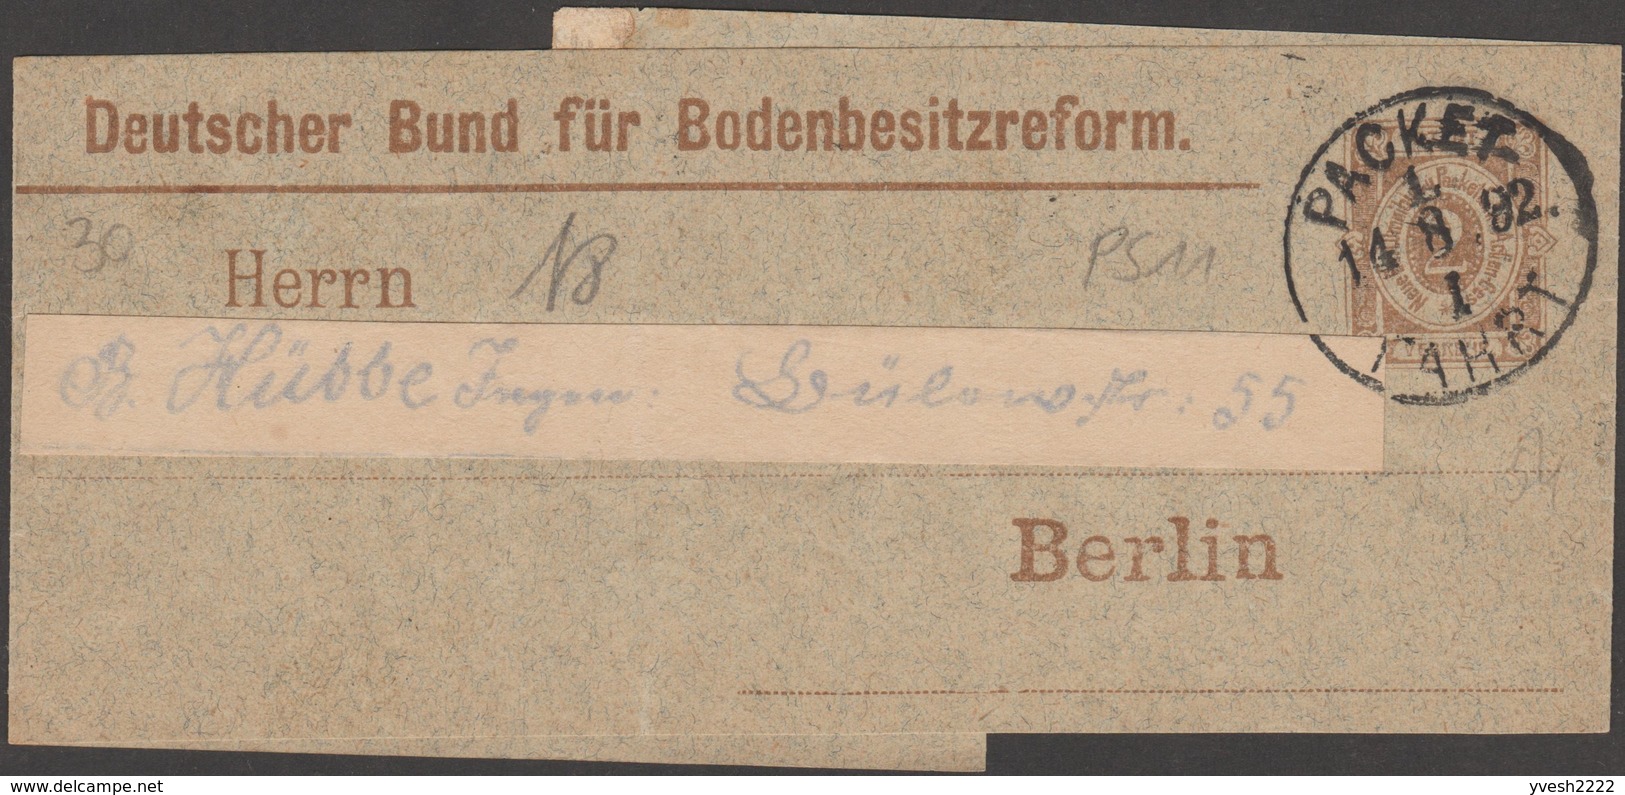 Berlin 1892. Poste Privée, Entier Postal Timbré Sur Commande. ..Bodenbesitzreform, Association Allemande Réforme Agraire - Agriculture